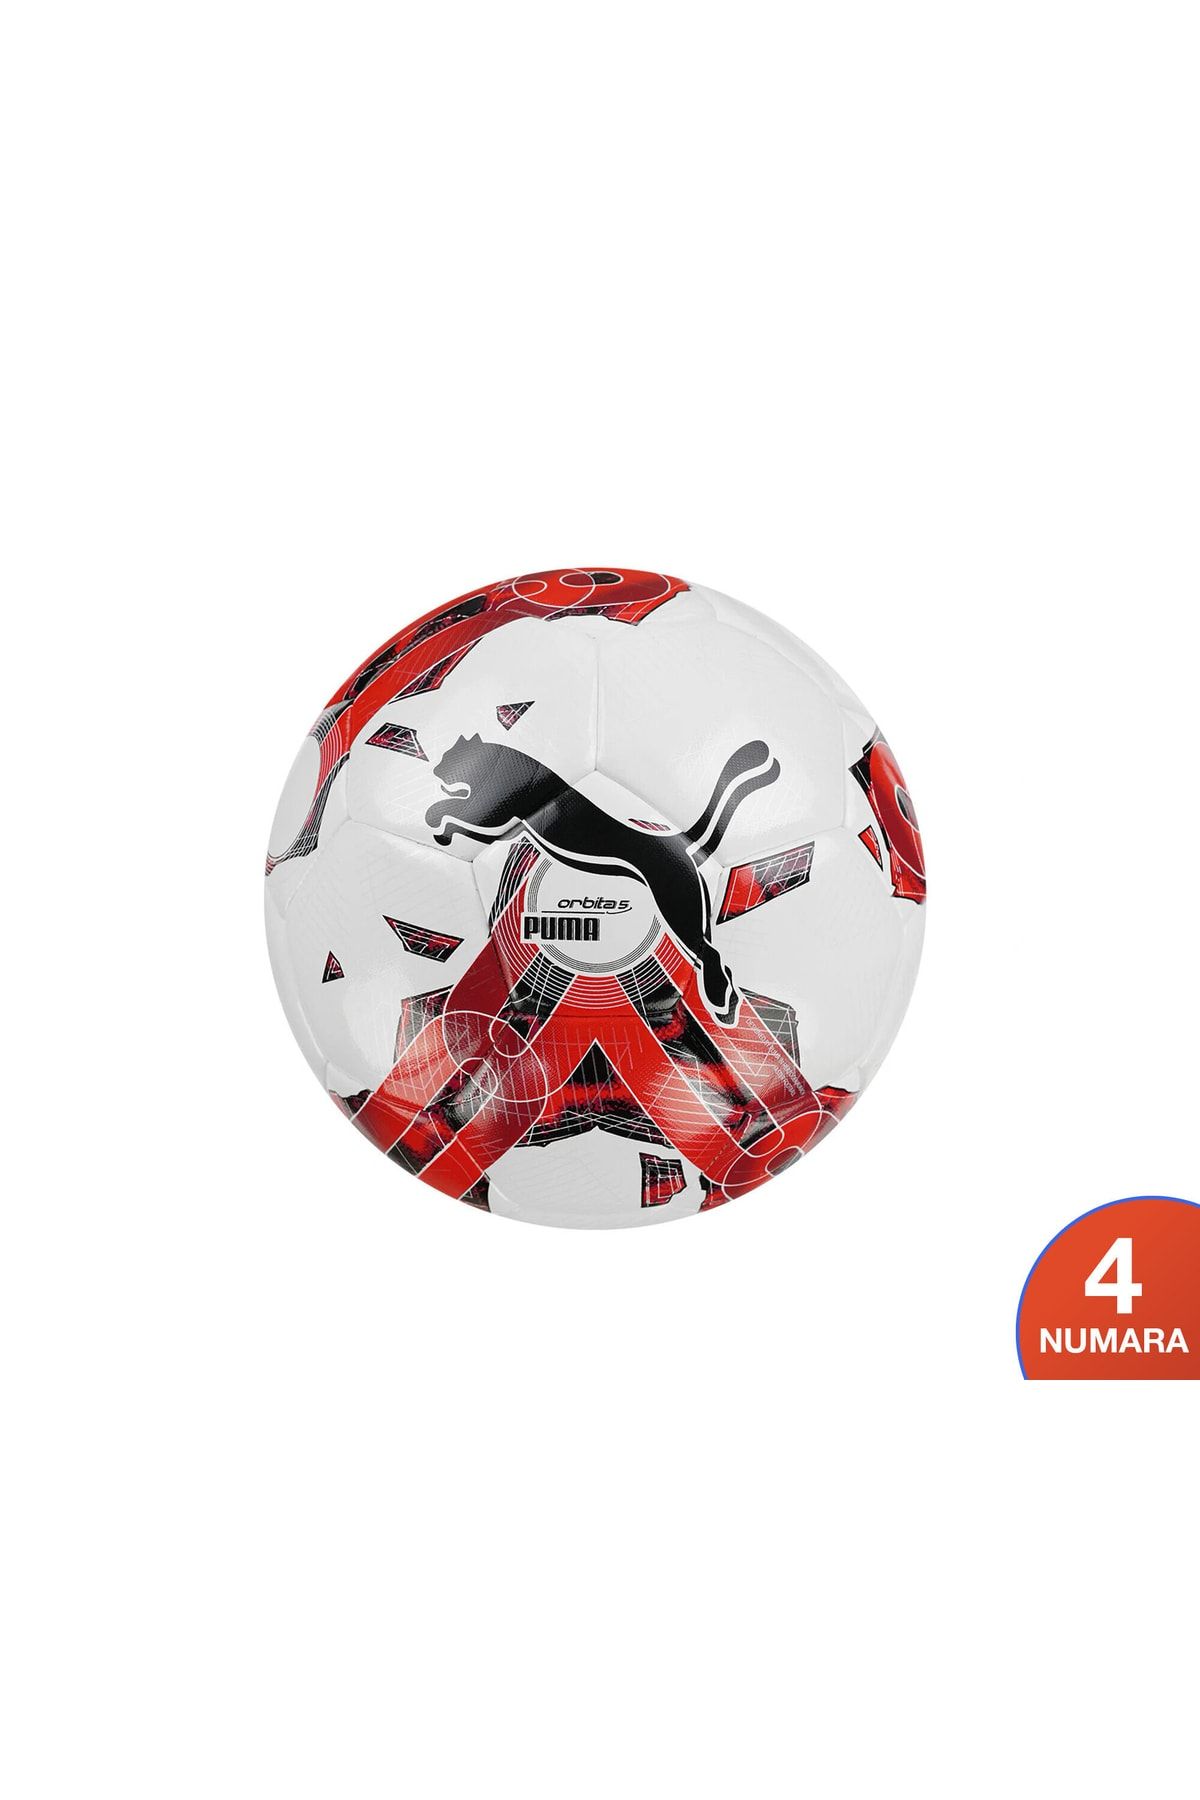 Puma Orbita 5 Hyb - 4 Numara- Futbol Topu 8378302 Beyaz-kırmızı